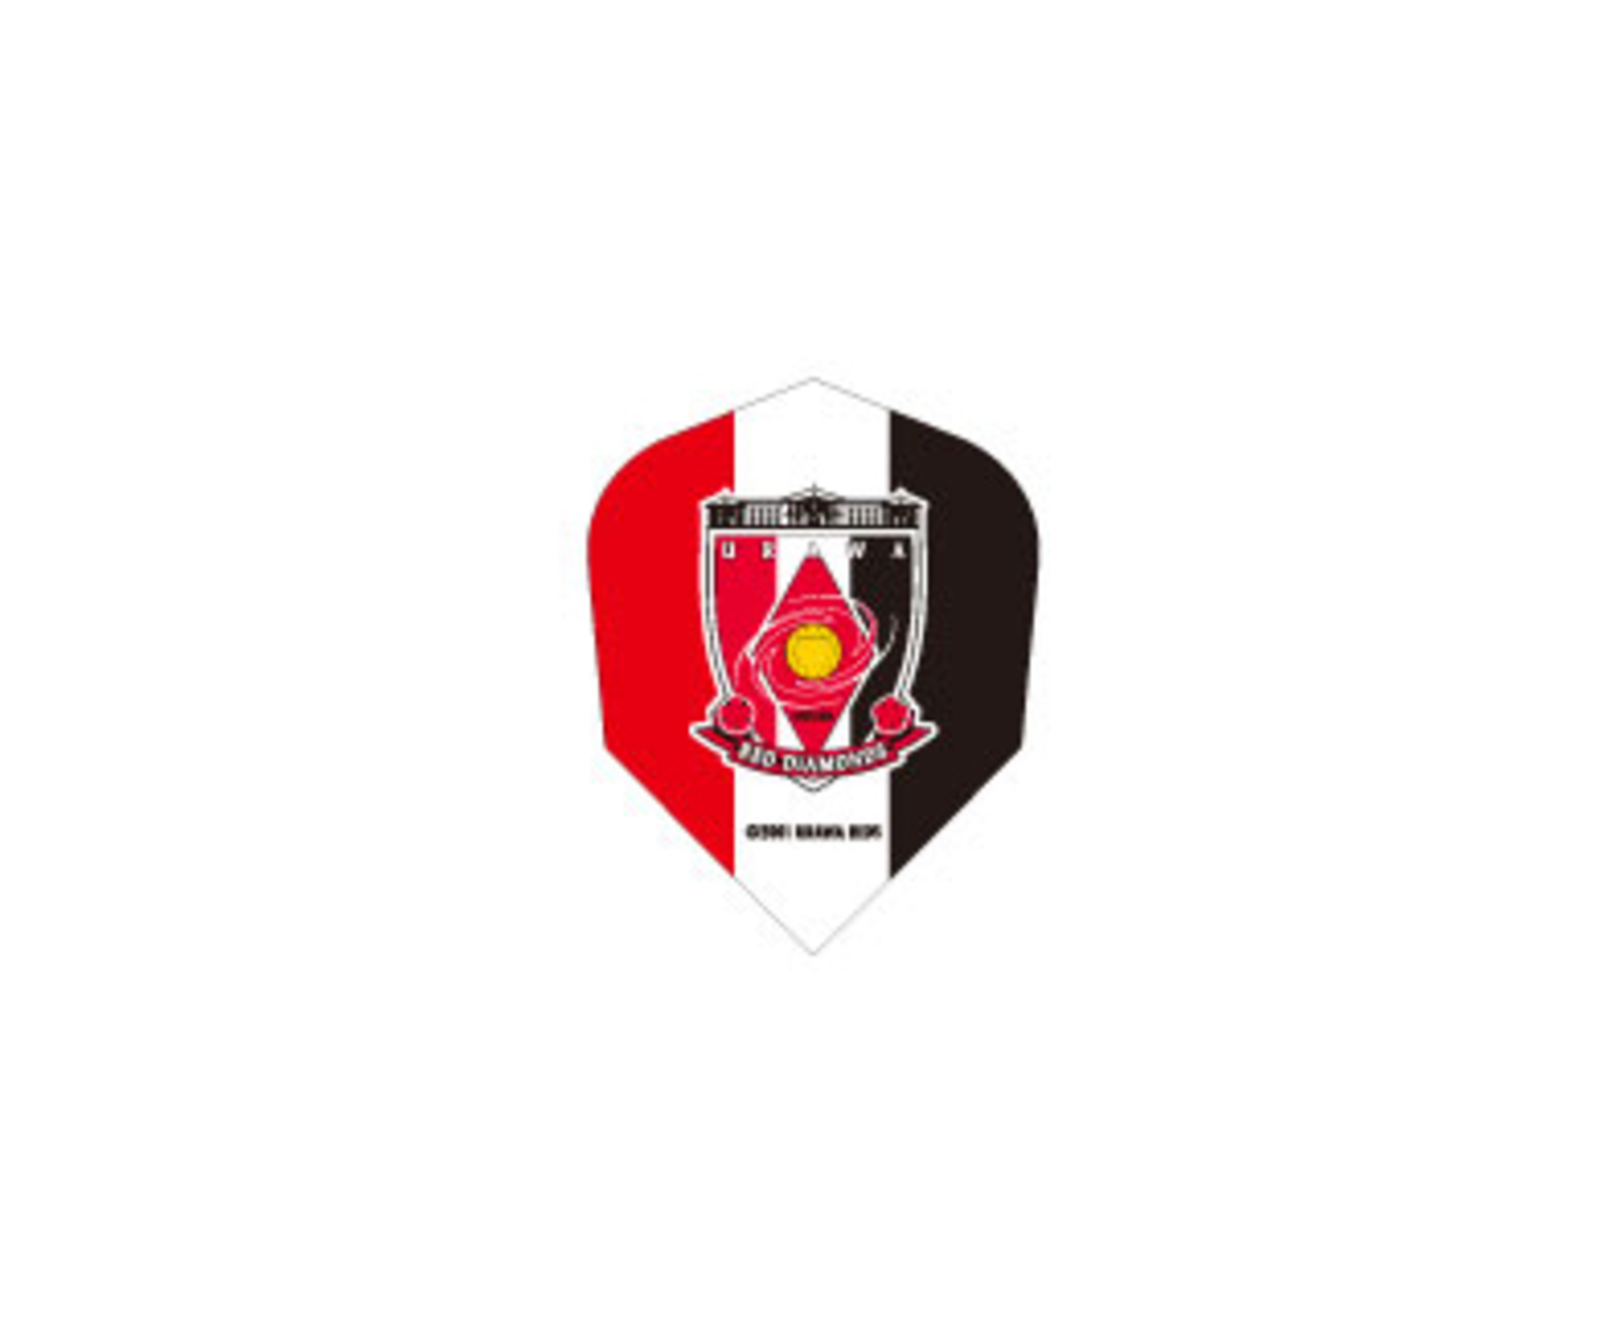 ダーツフライト Jリーグ 浦和レッズ デザインフライト Emblem ダーツ用品はエスダーツ 延べ70万人以上が利用しているダーツショップ